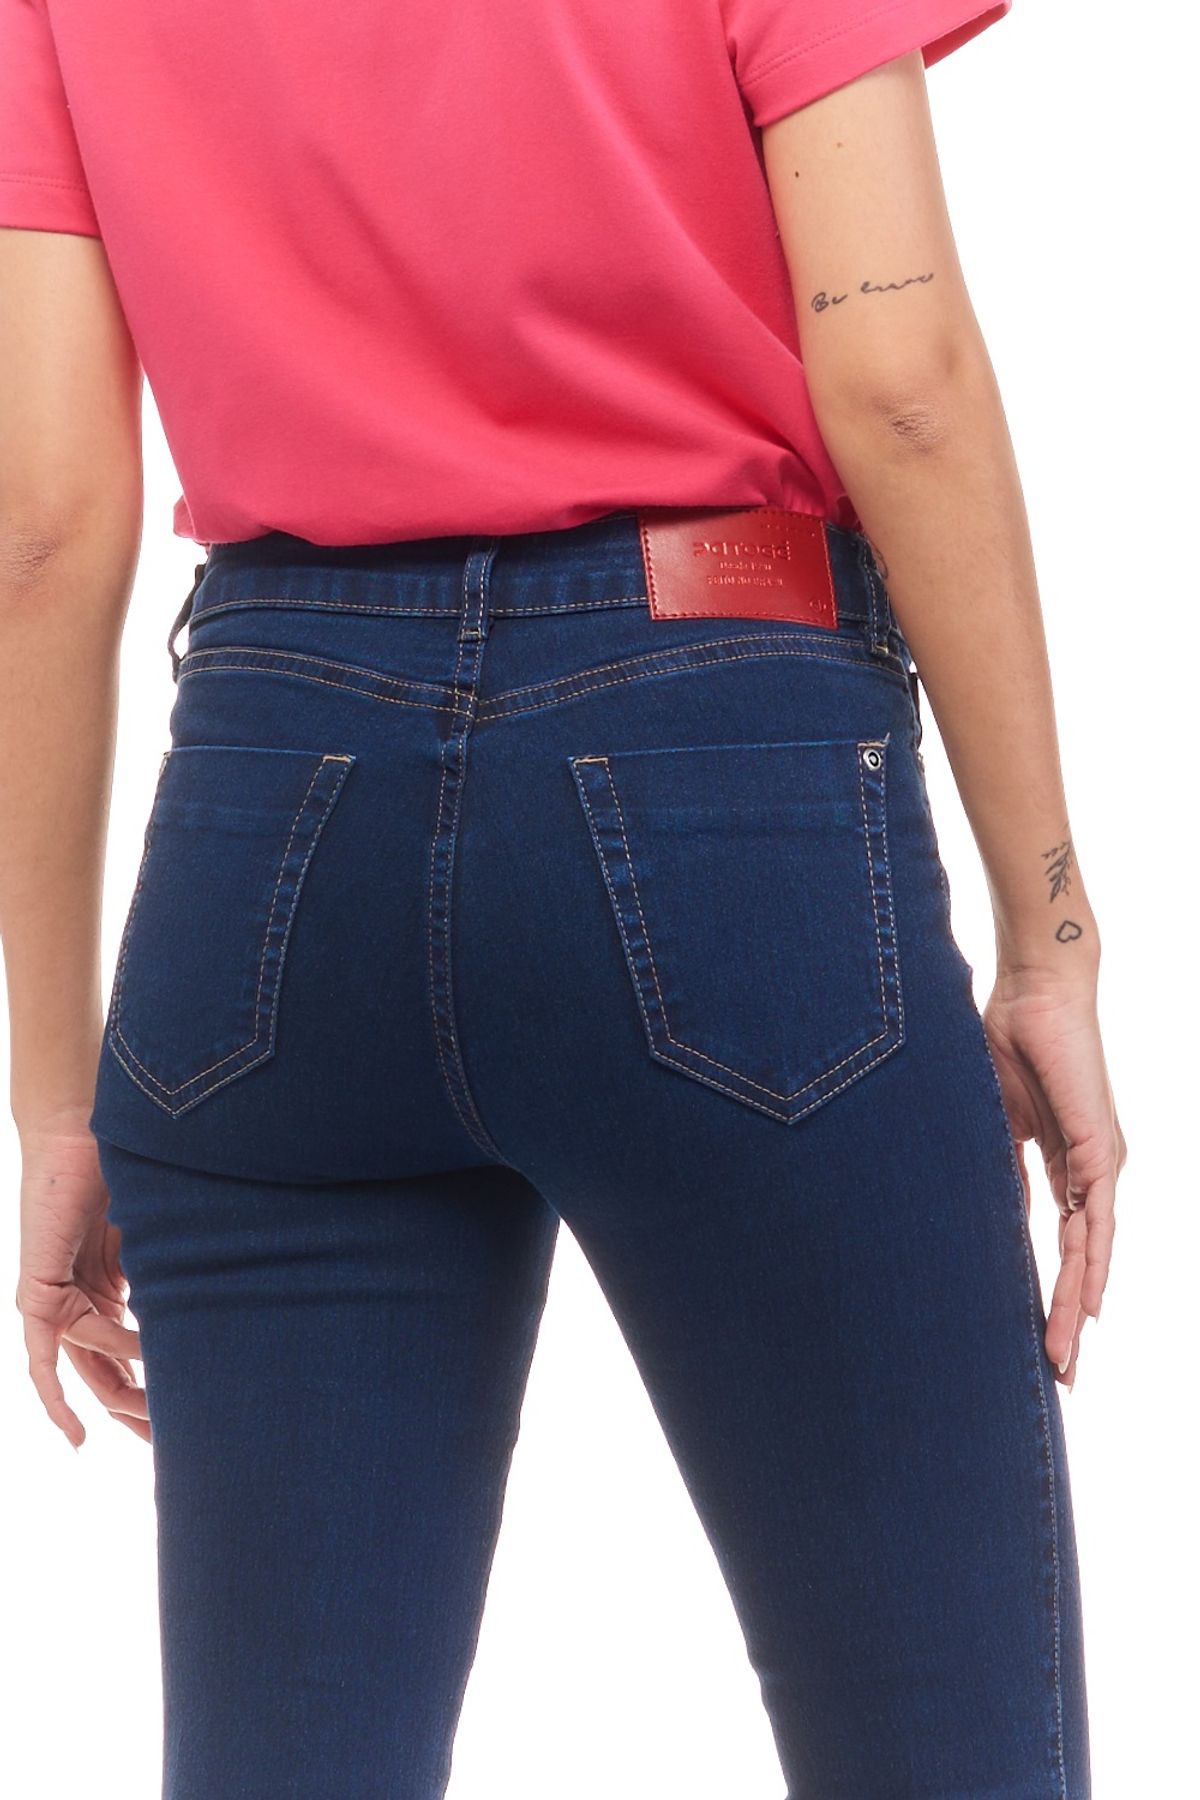 Calça Patogê feminina flare curvy jeans cintura média (G3) CL37135 - patoge